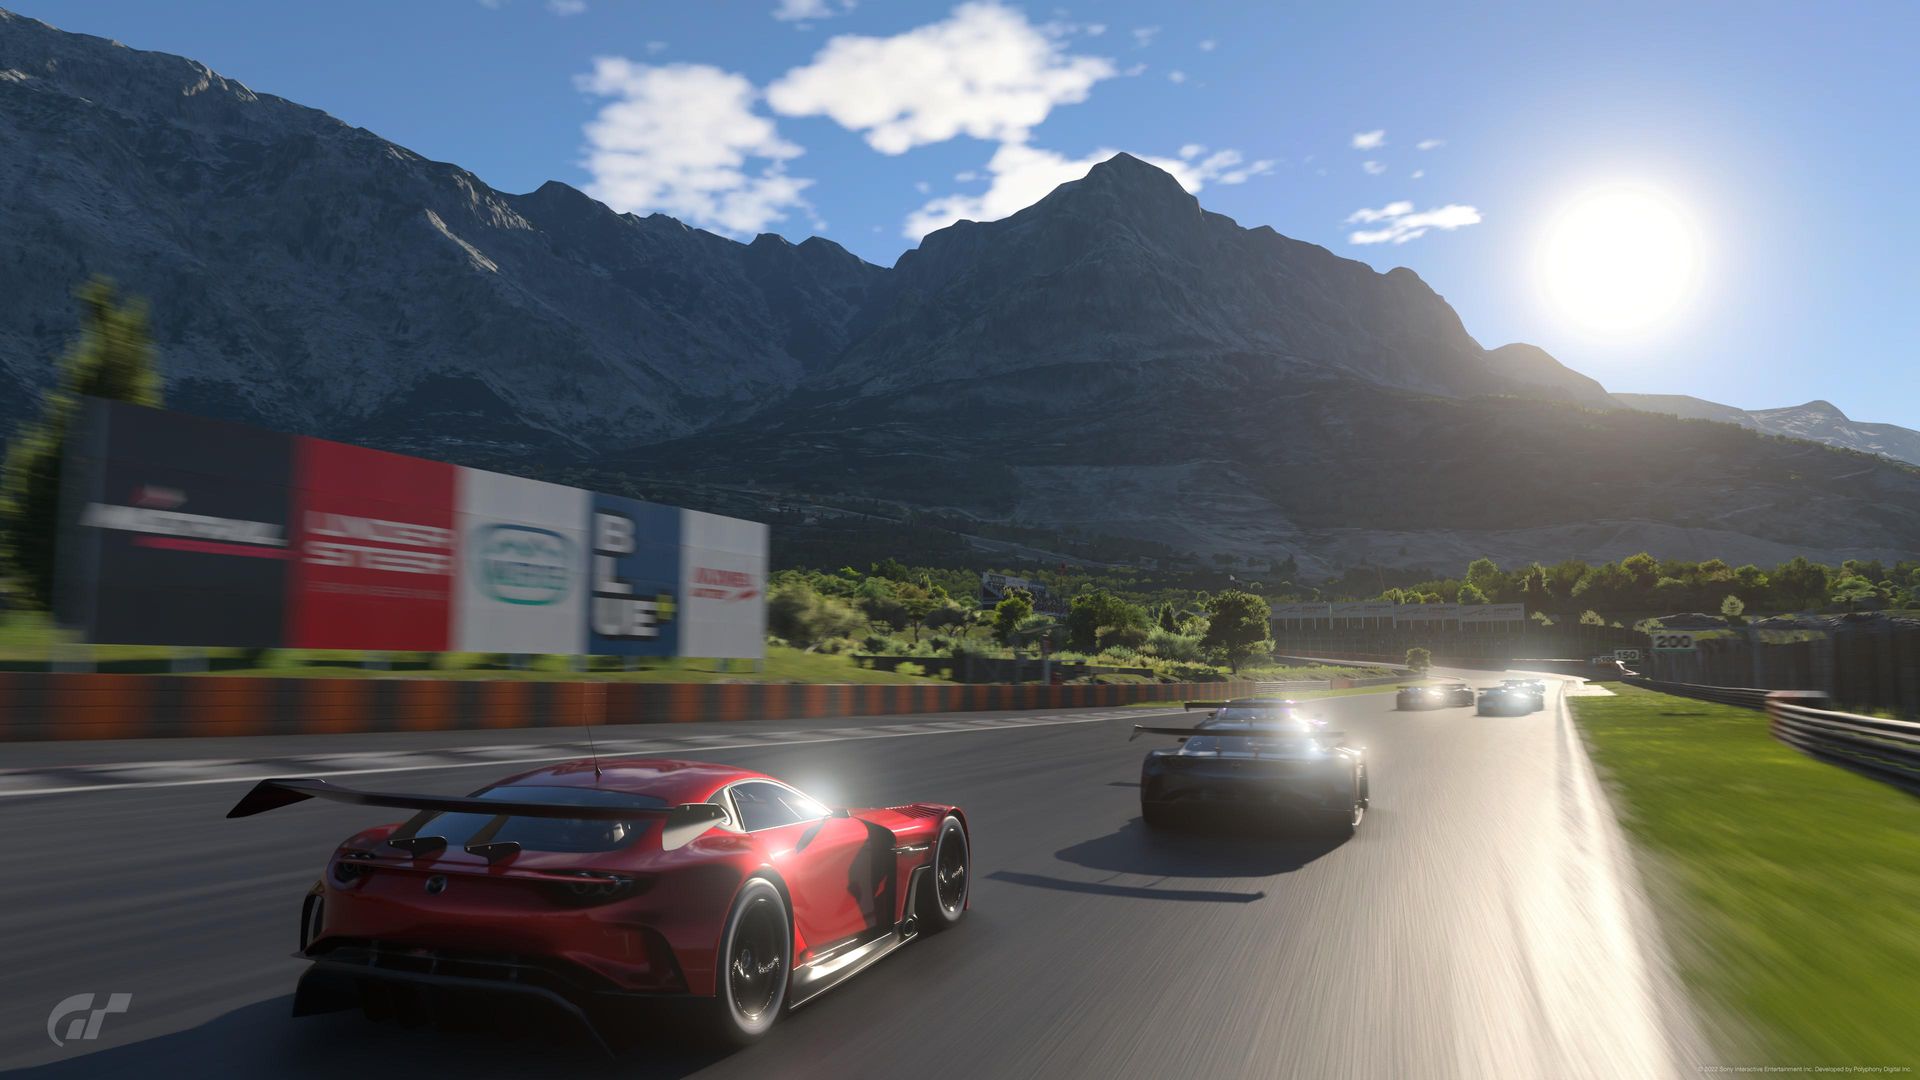 Obrázek PS4 -  Gran Turismo 7